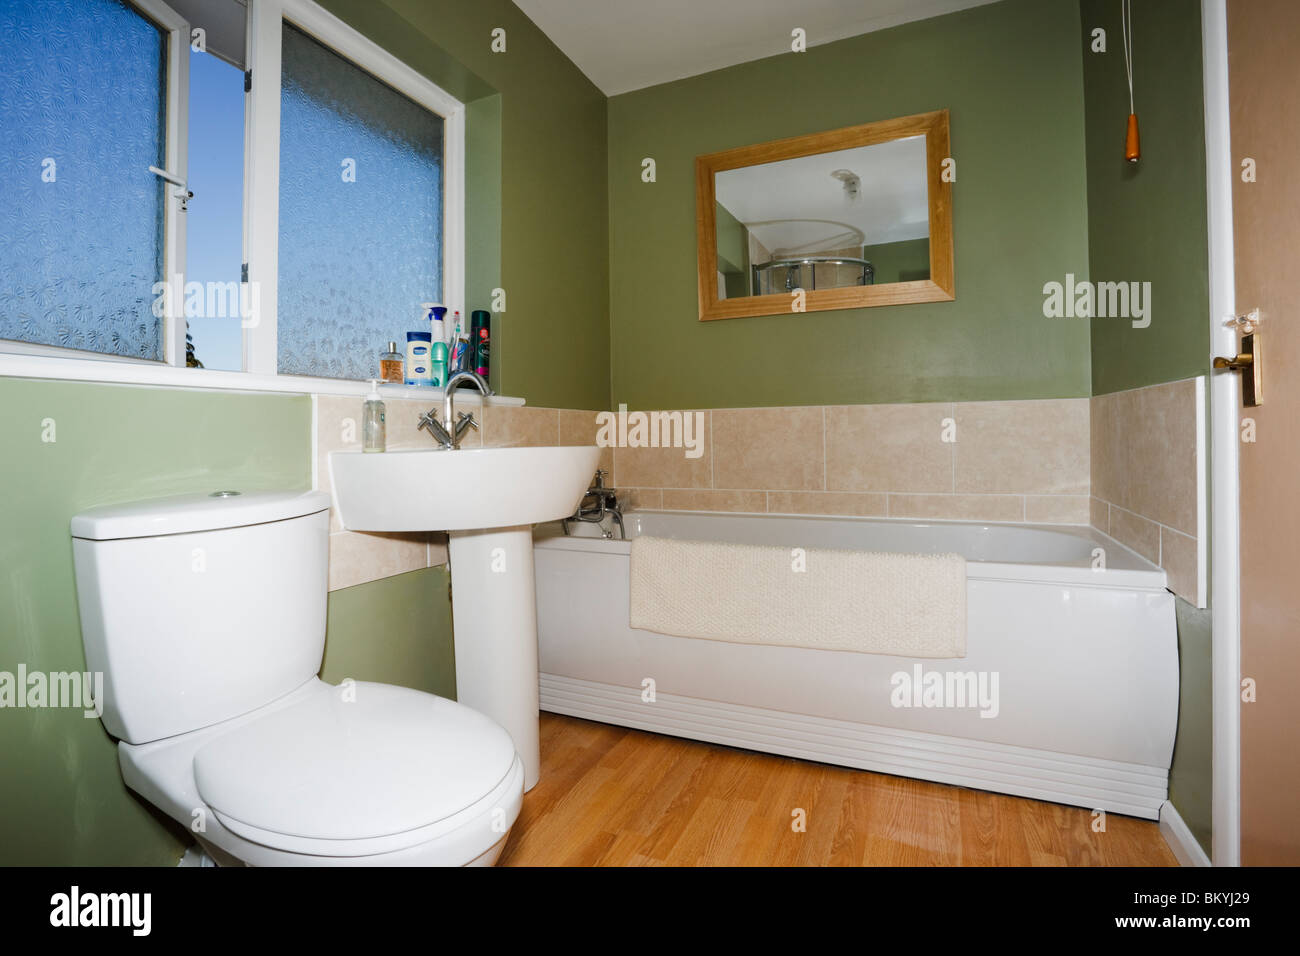 Piccolo bagno con pareti verdi e suite bianca con servizi igienici in ceramica, lavabo e vasca. Inghilterra, Regno Unito, Gran Bretagna. Foto Stock